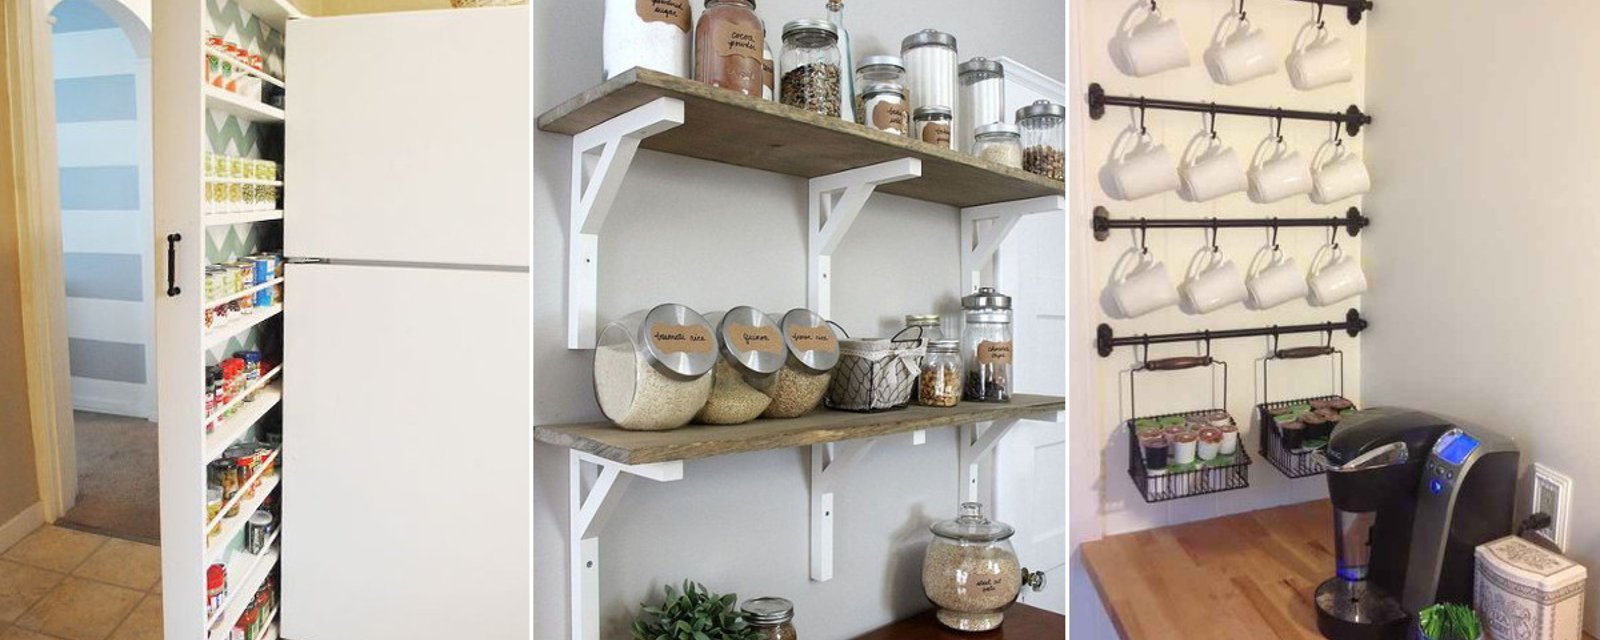 14 idées pour maximiser l'espace de rangement dans votre cuisine